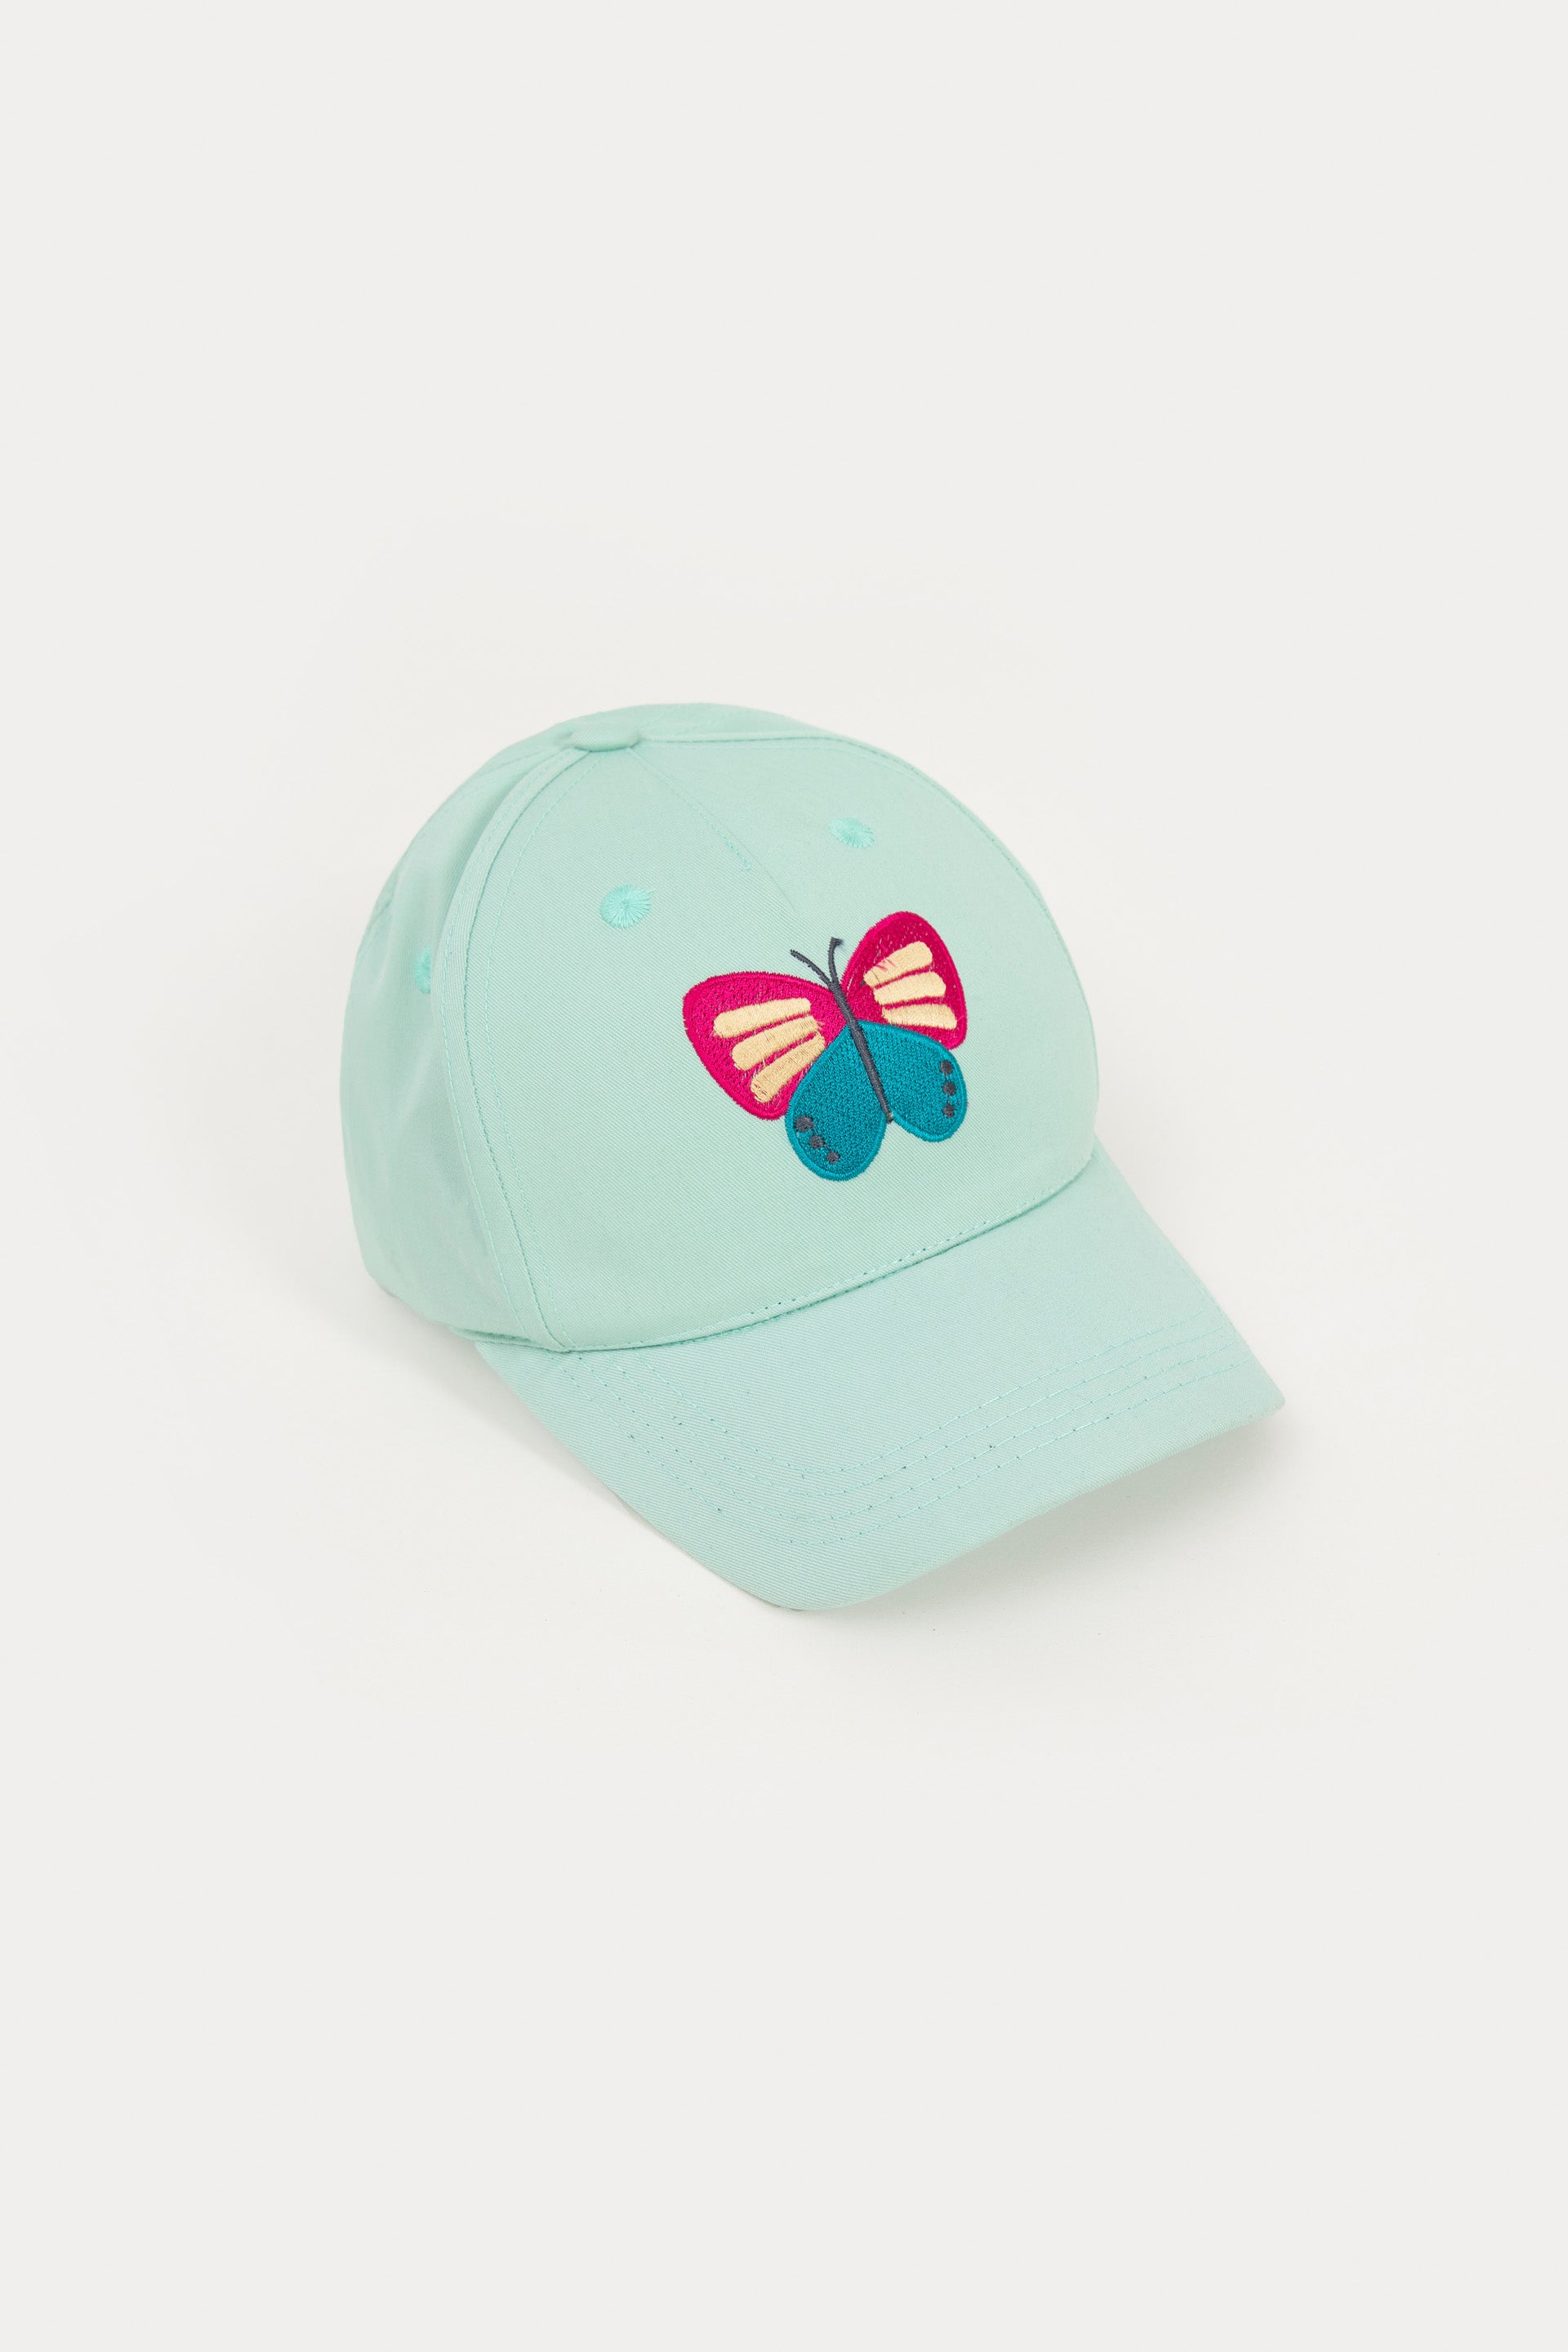 p cap for girl